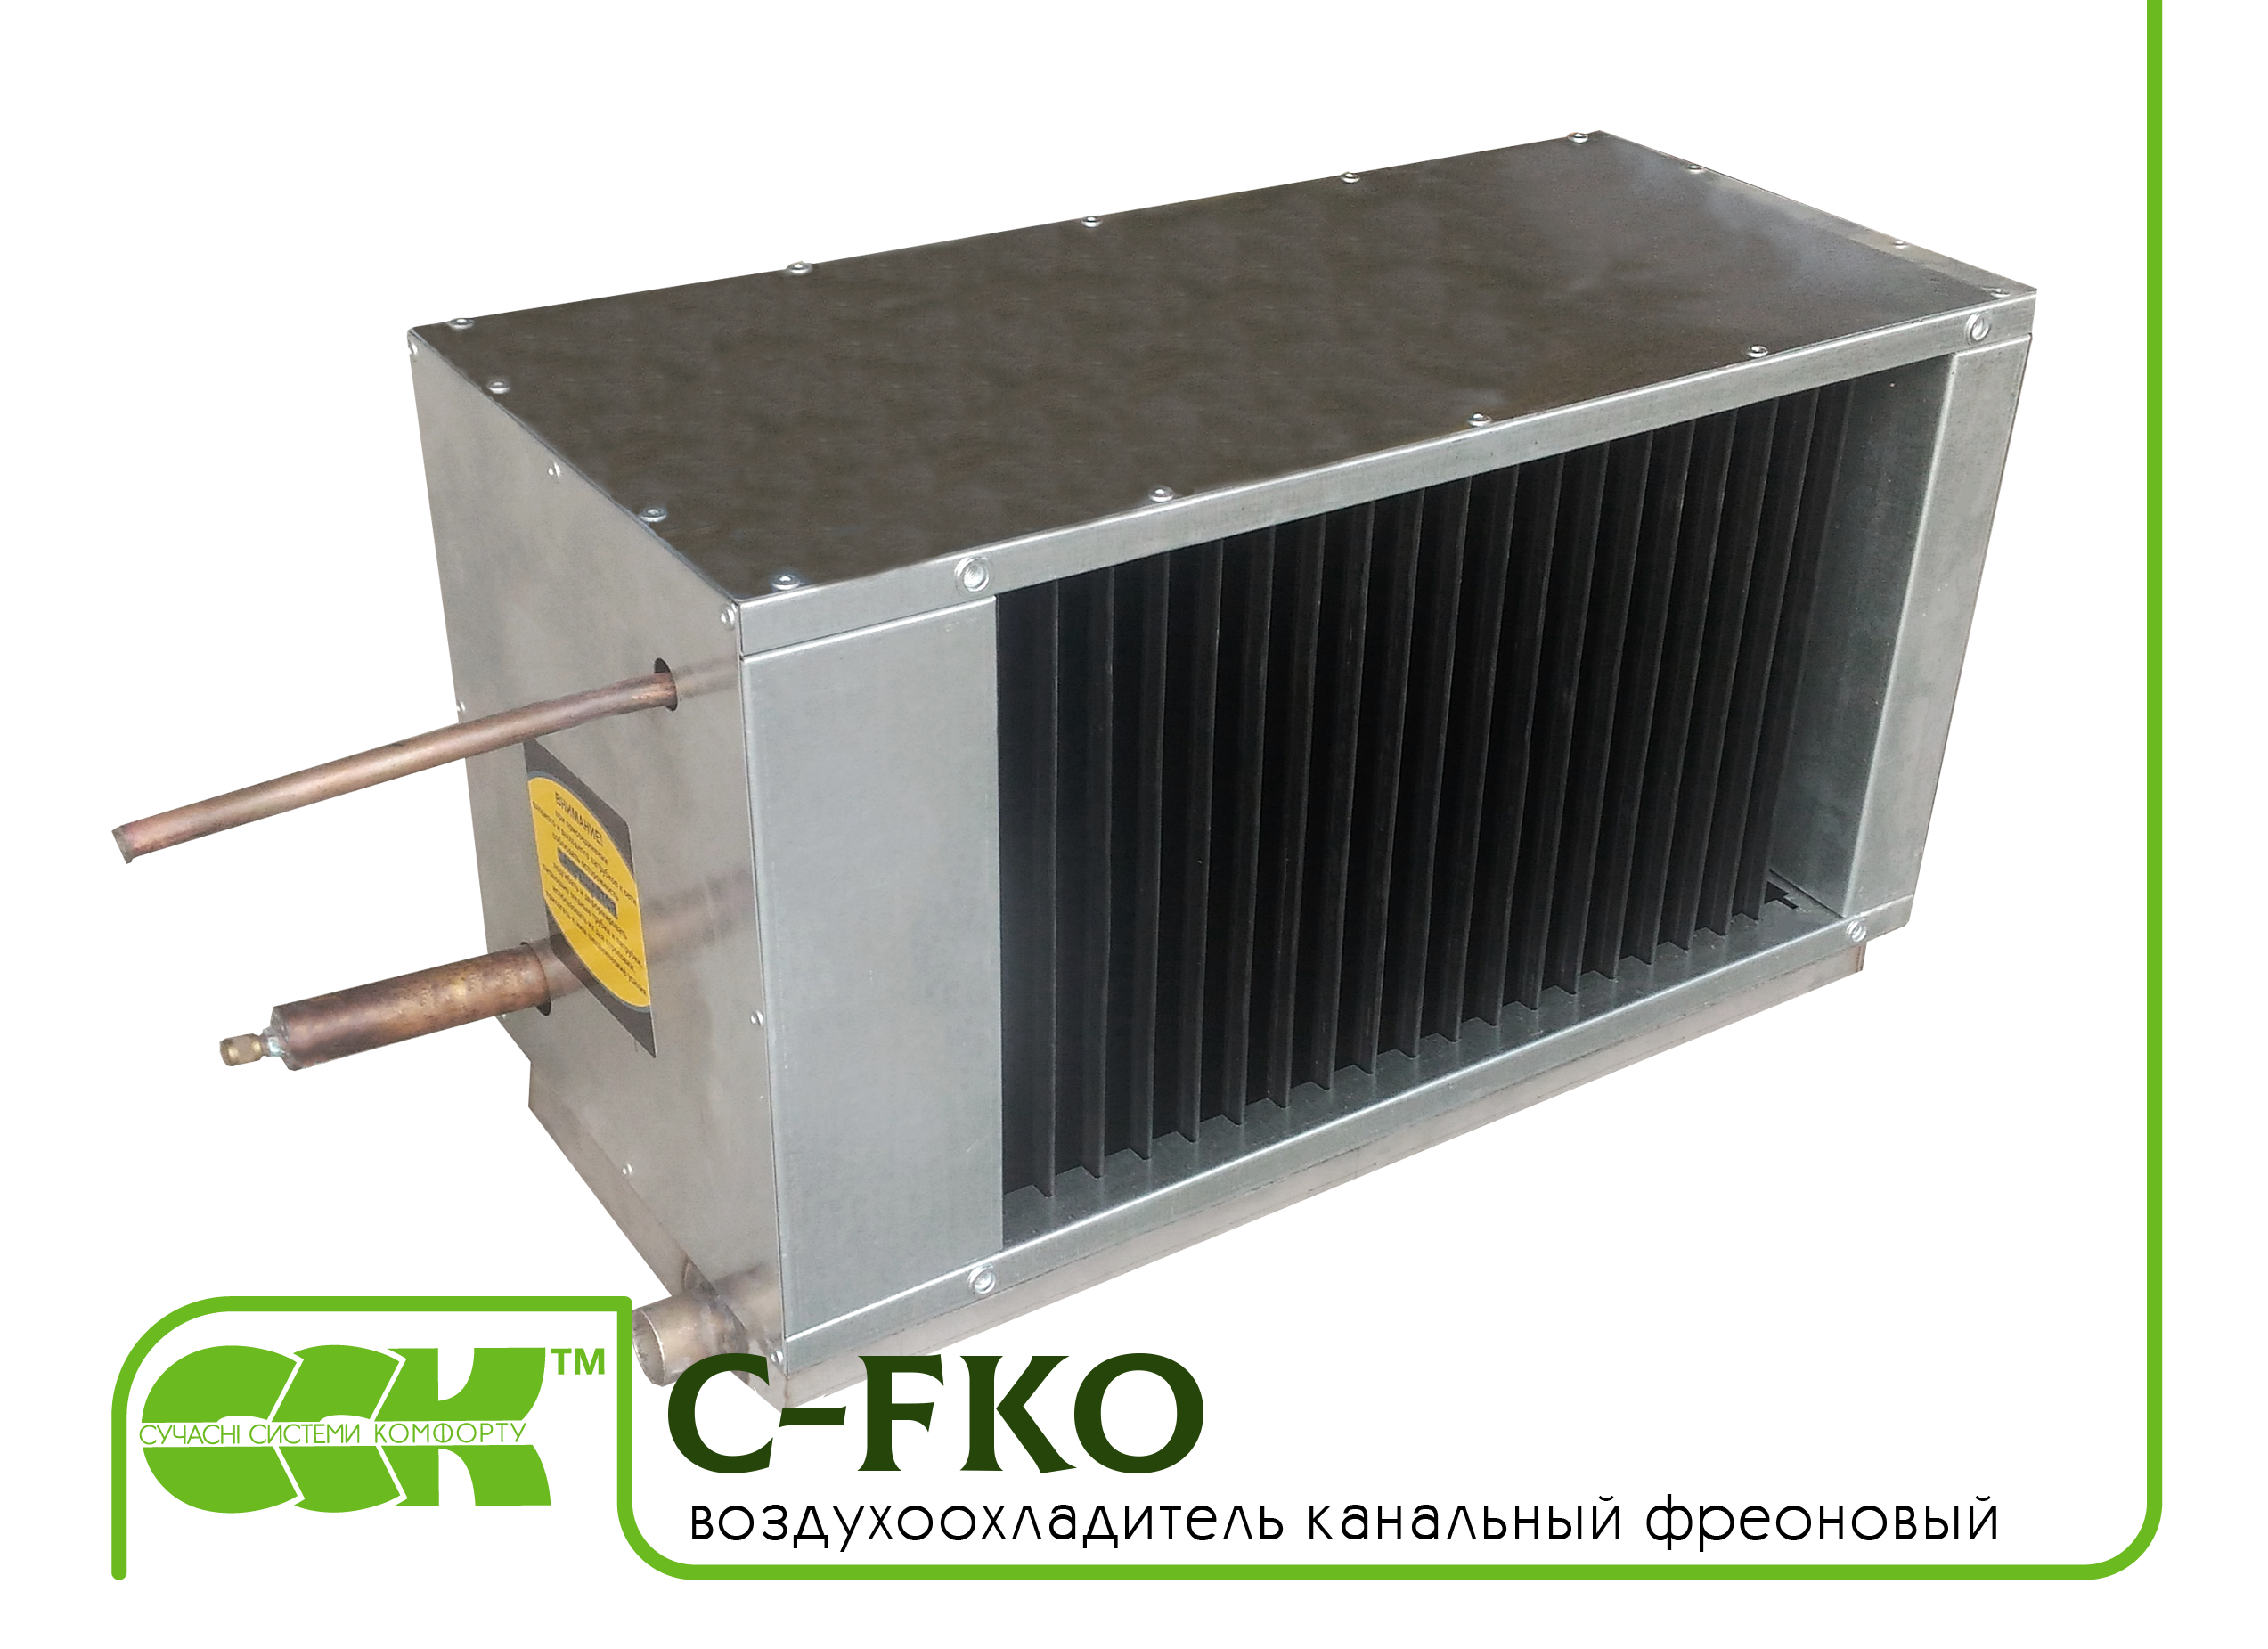 Фреоновый воздухоохладитель канальный C-FKO-100-50